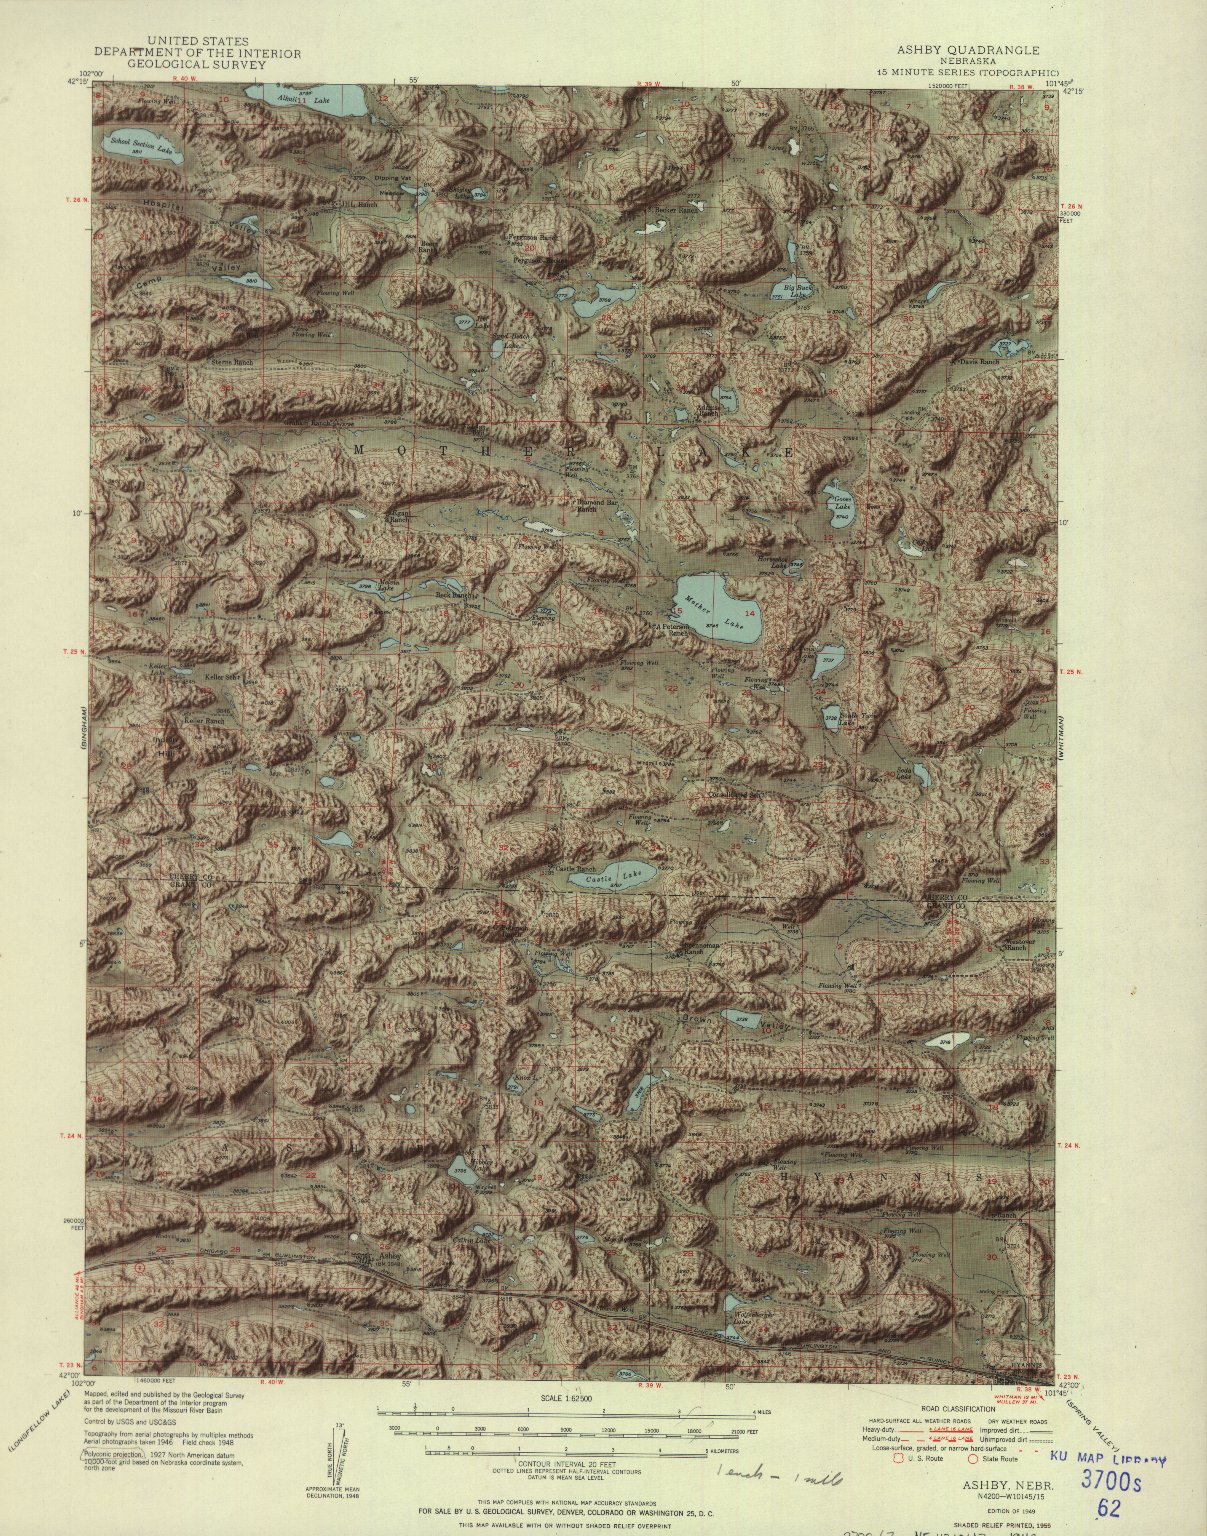 Ashby Nebrasaka Geological Survey 1955